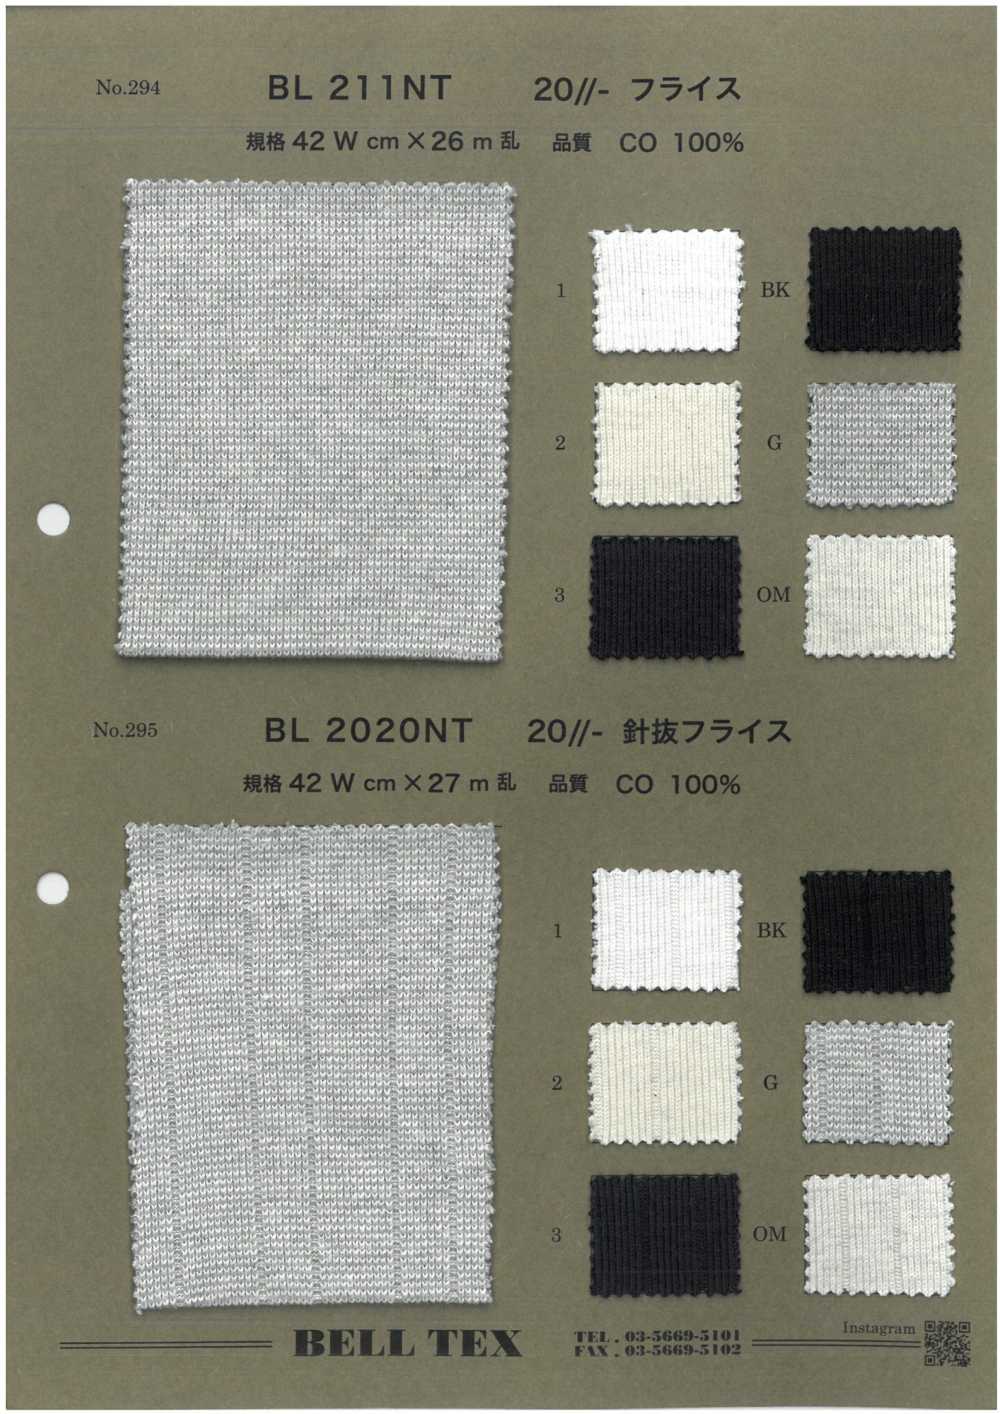 BL211NT 20//- Costela Circular[Têxtil / Tecido] Vértice